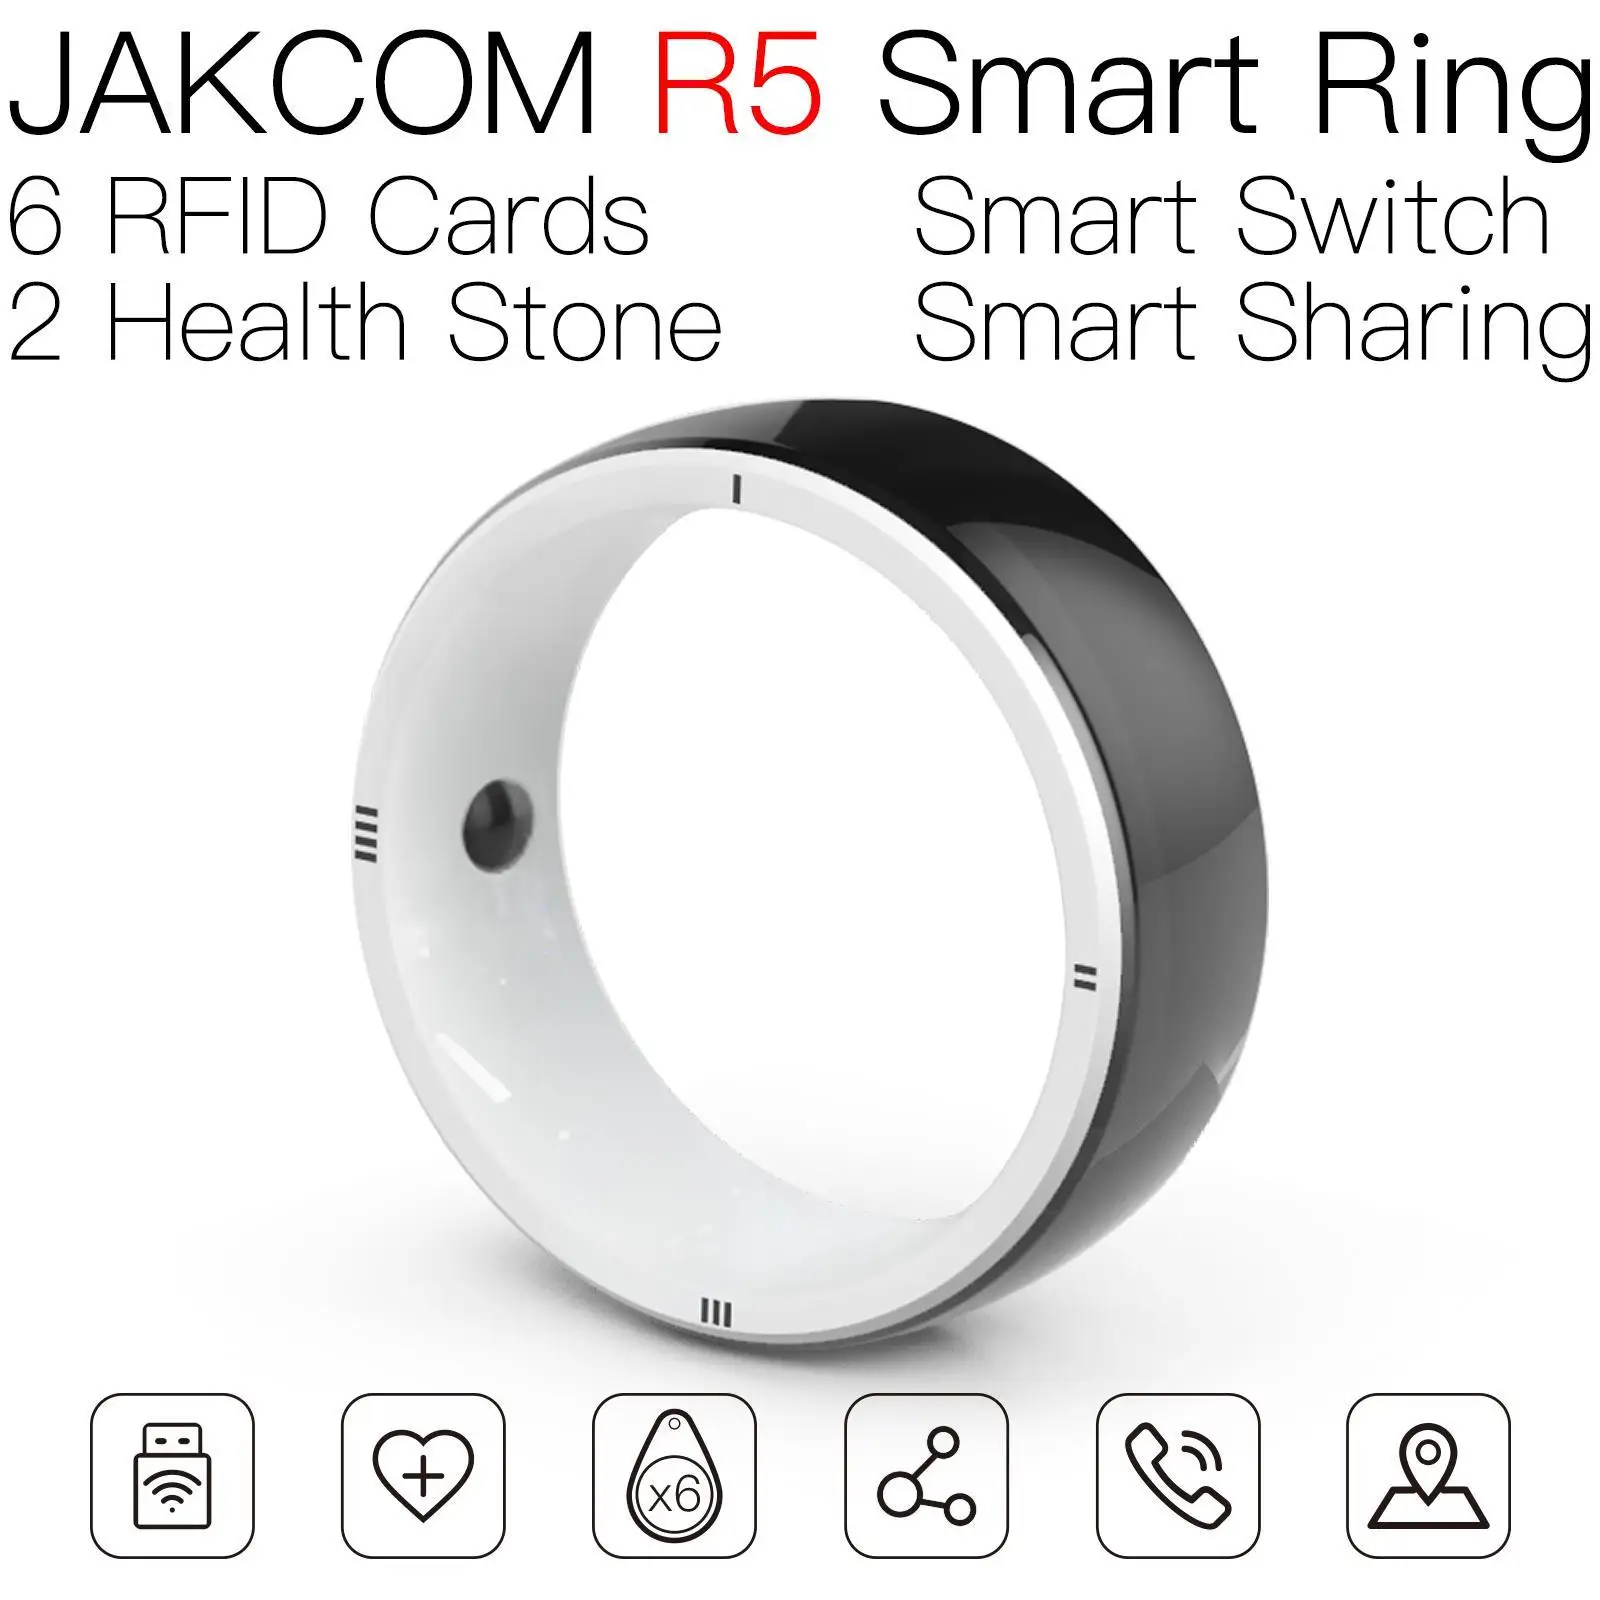 

Умное кольцо JAKCOM R5, красивое, чем карта, skyward ties rfid, переключатель новых горизонтов, Слон-клонер 125, наклейка, ПВХ, бирки a4